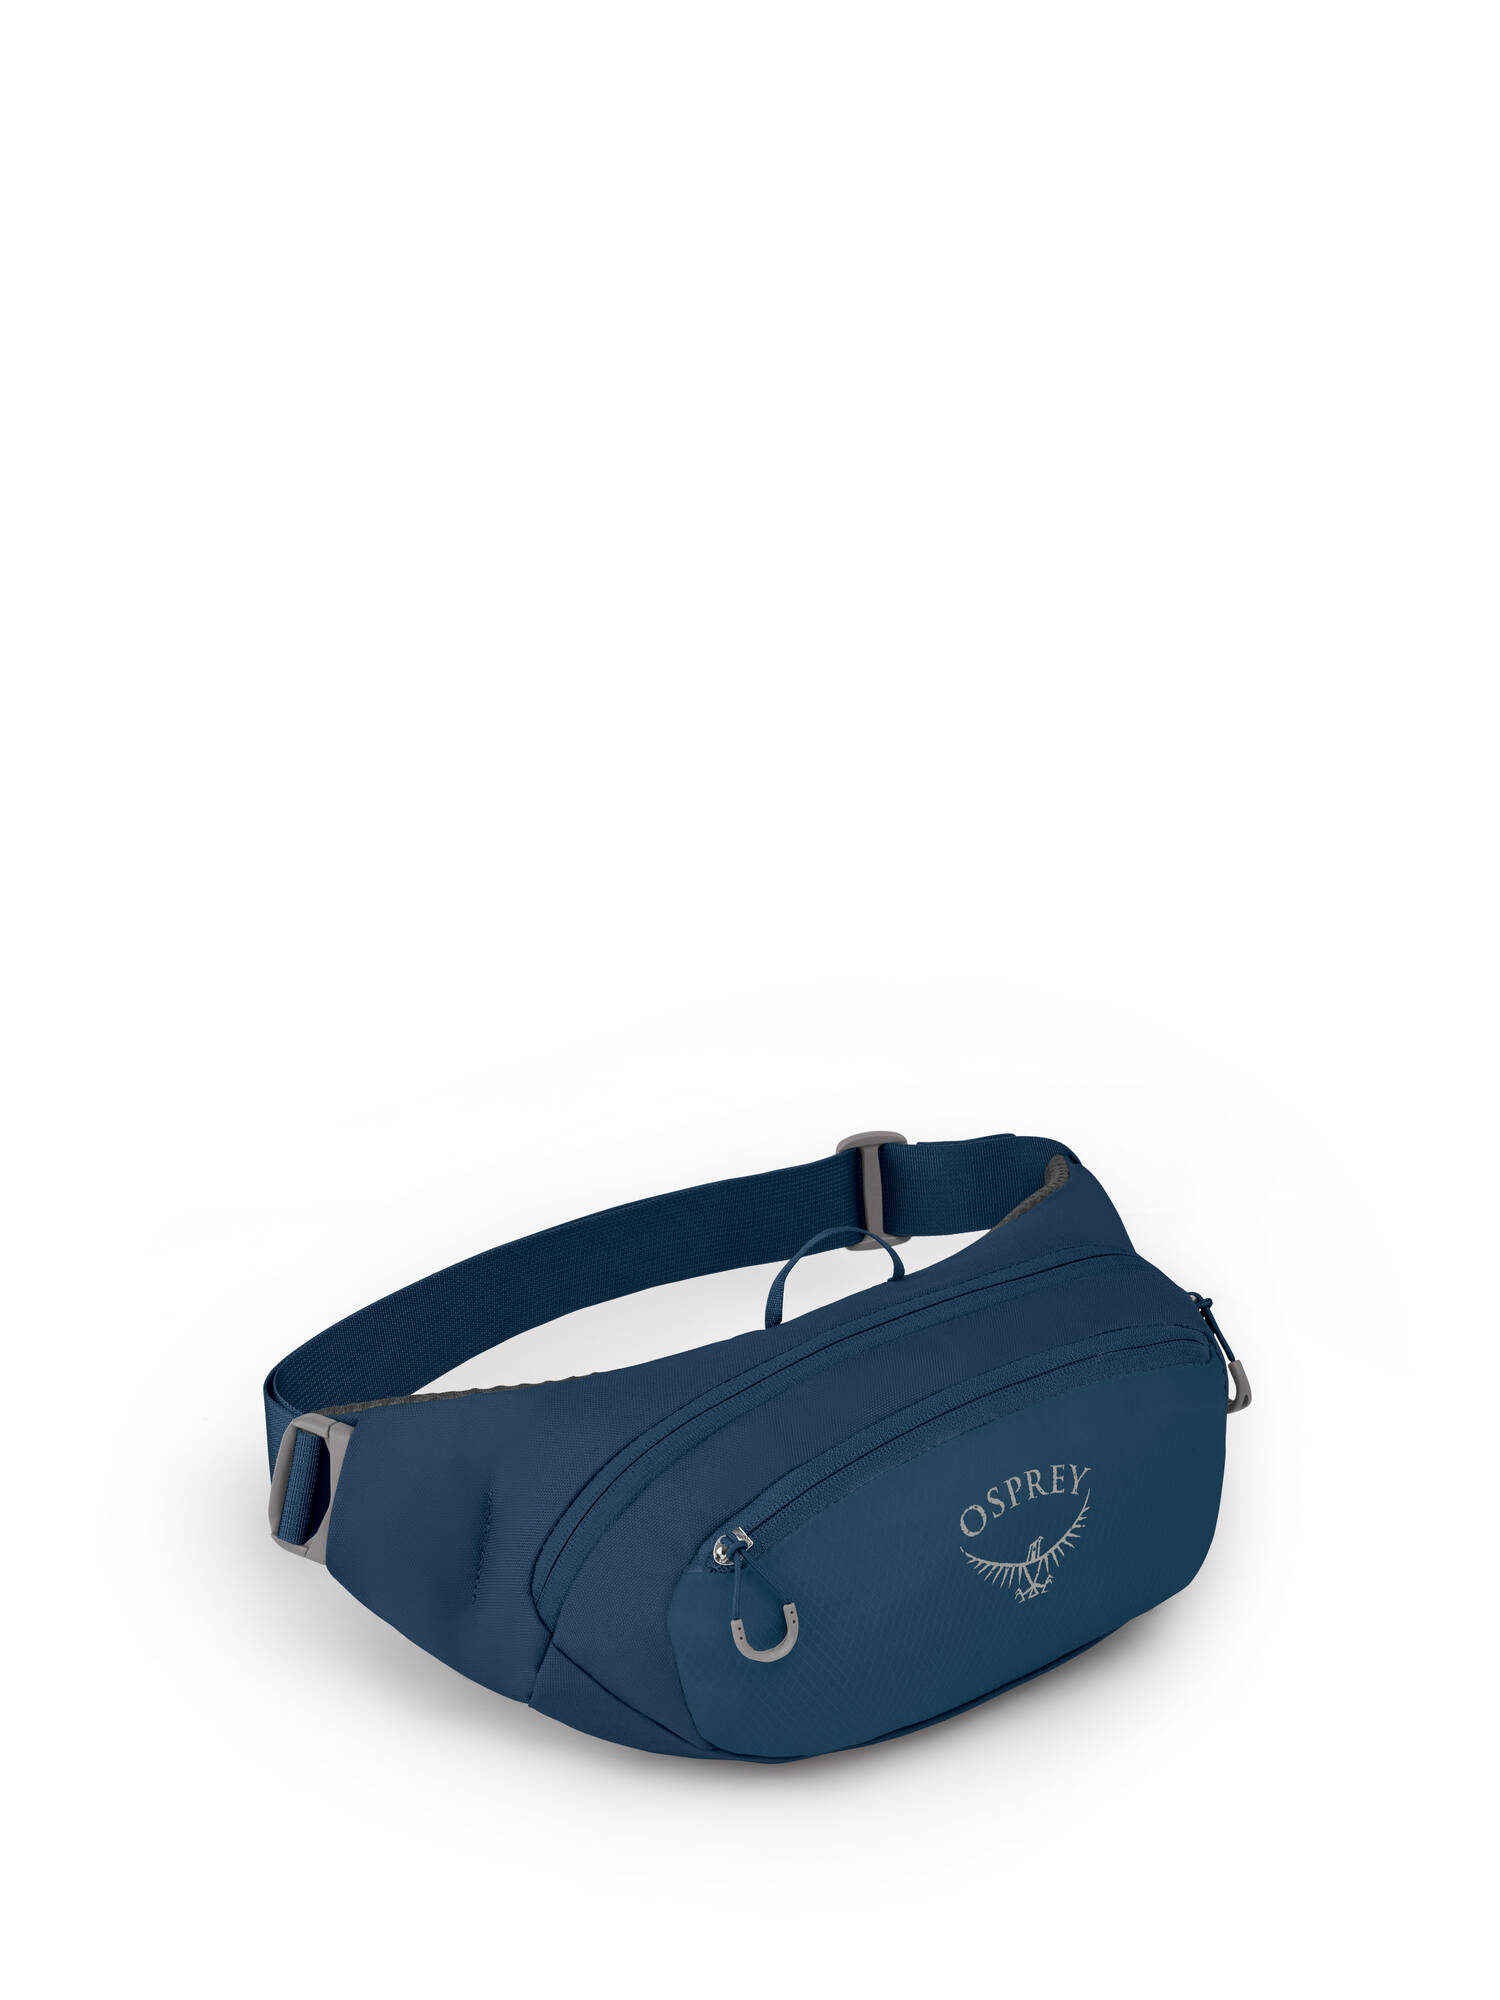 Osprey Belt Bag Daylite Blau